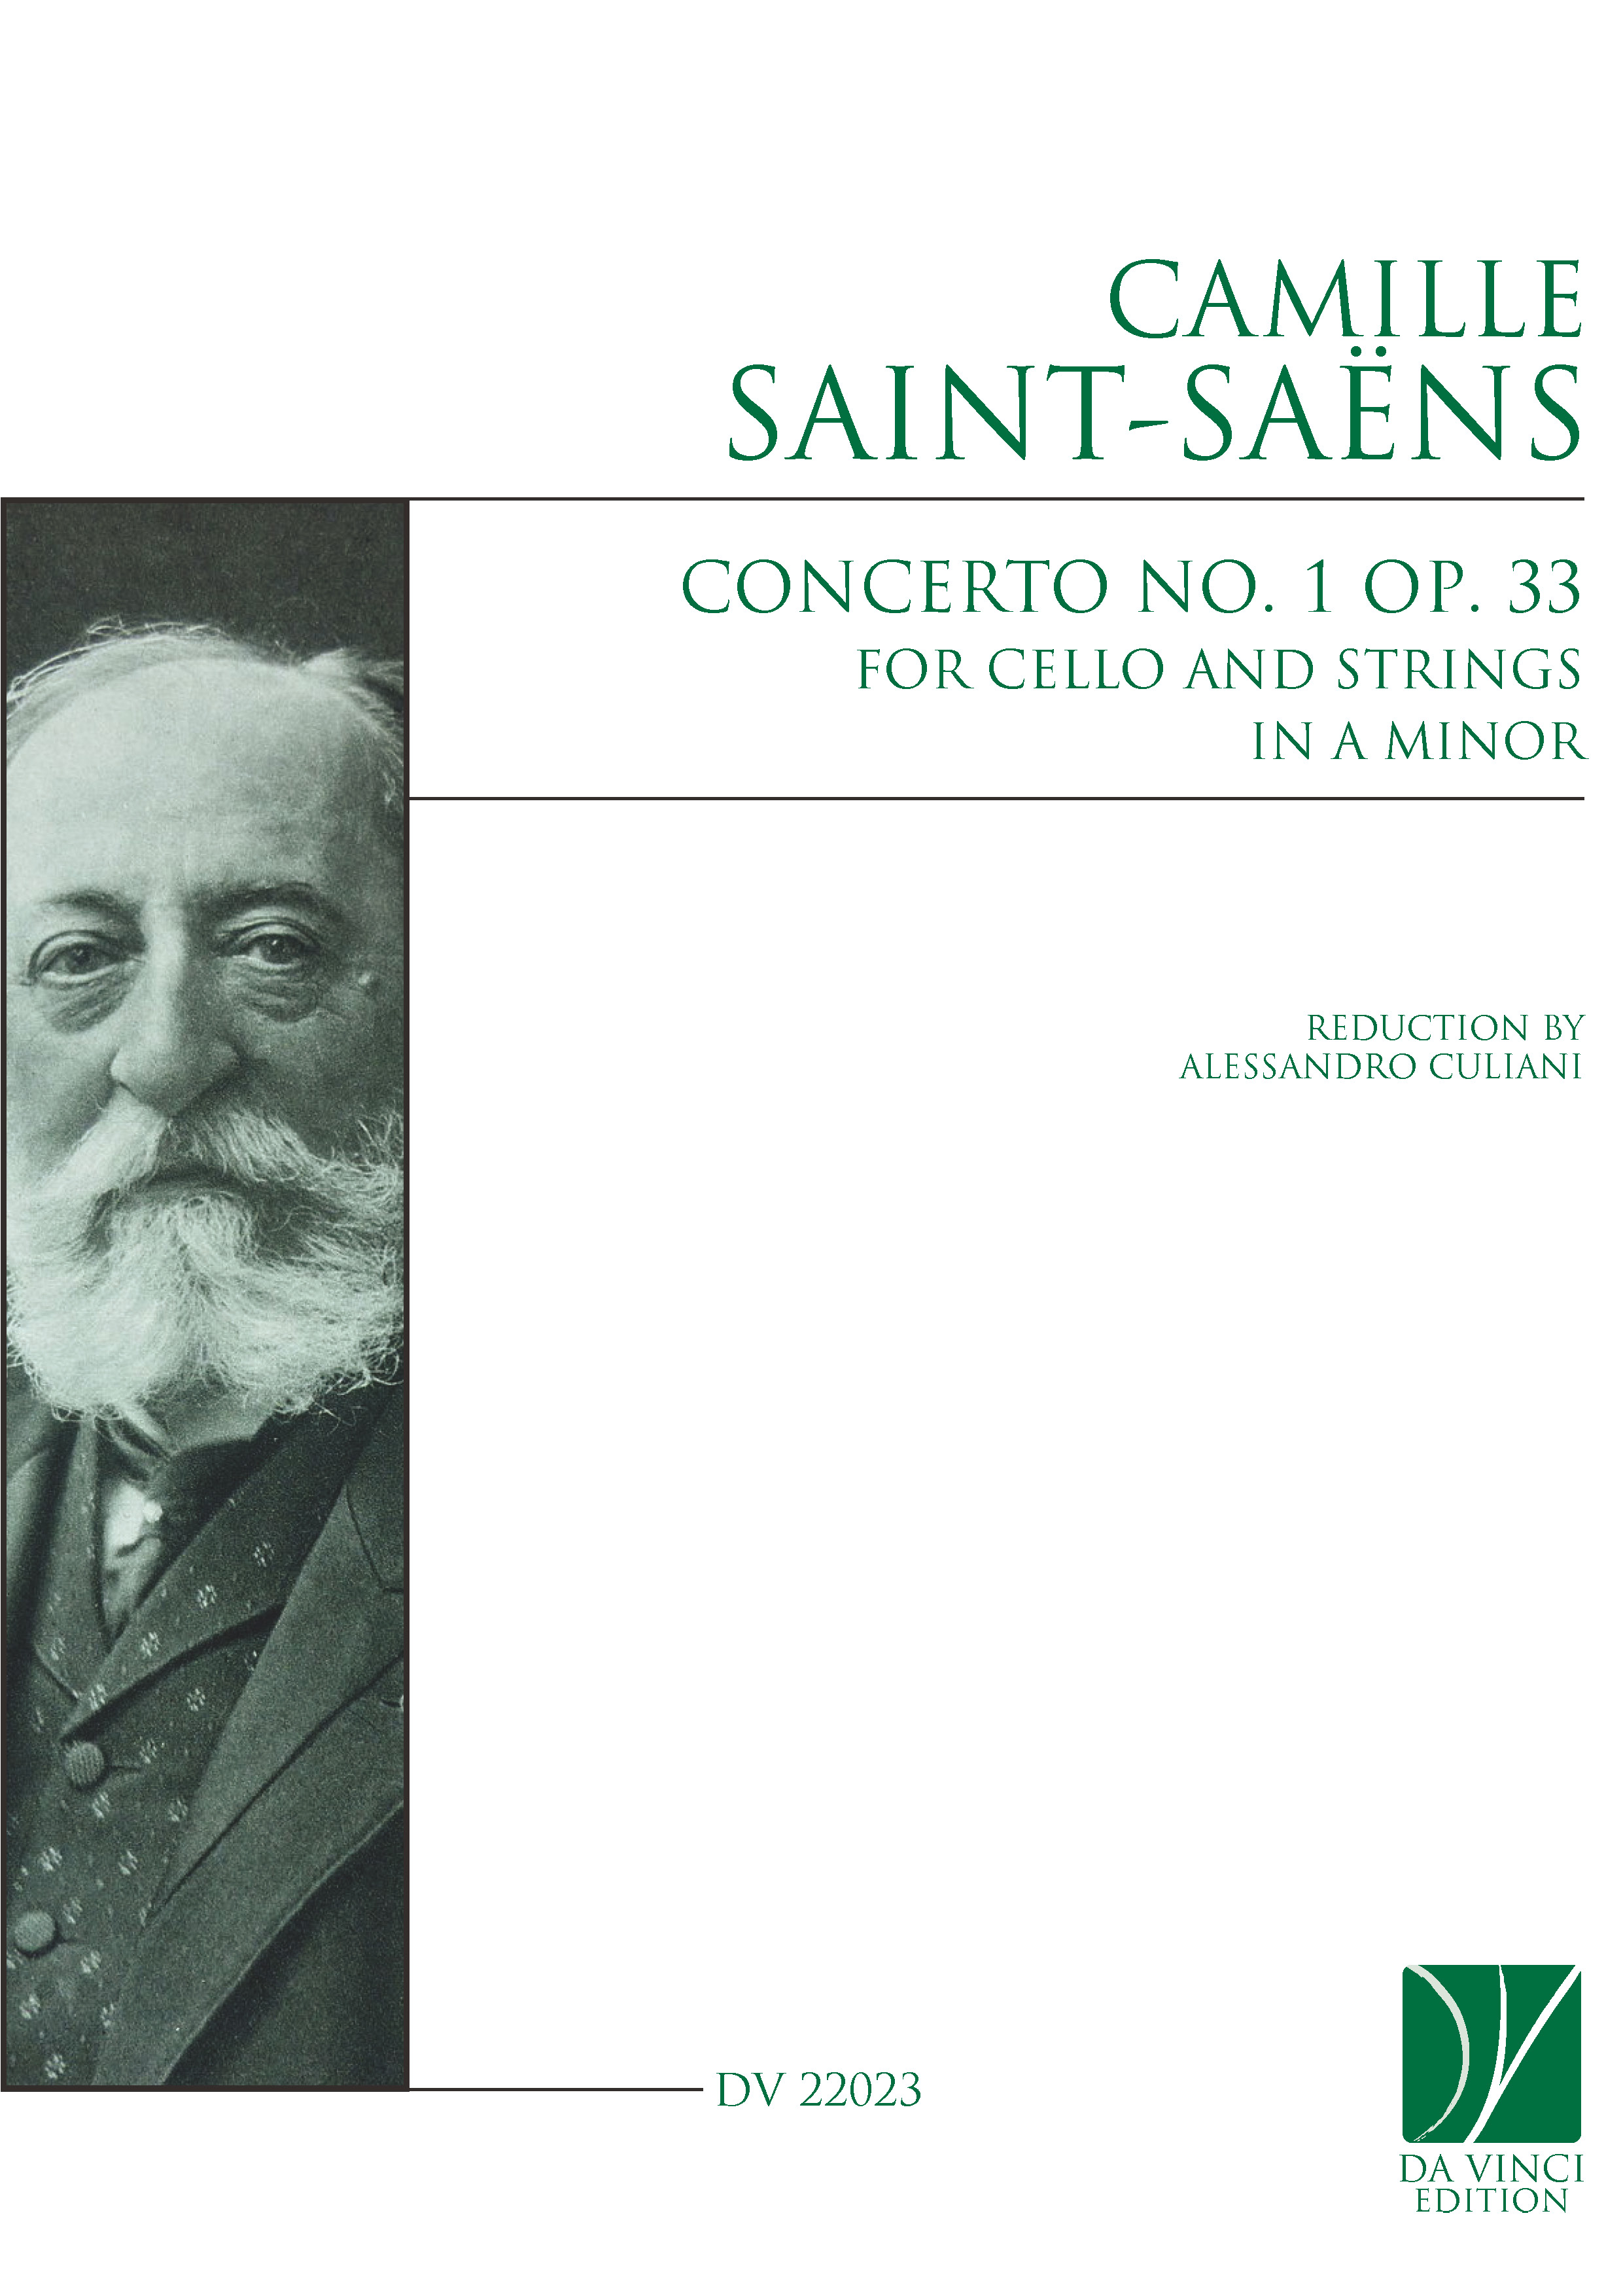 DV 22023 - Cover (Saint-Saens - Cello Concerto 1)